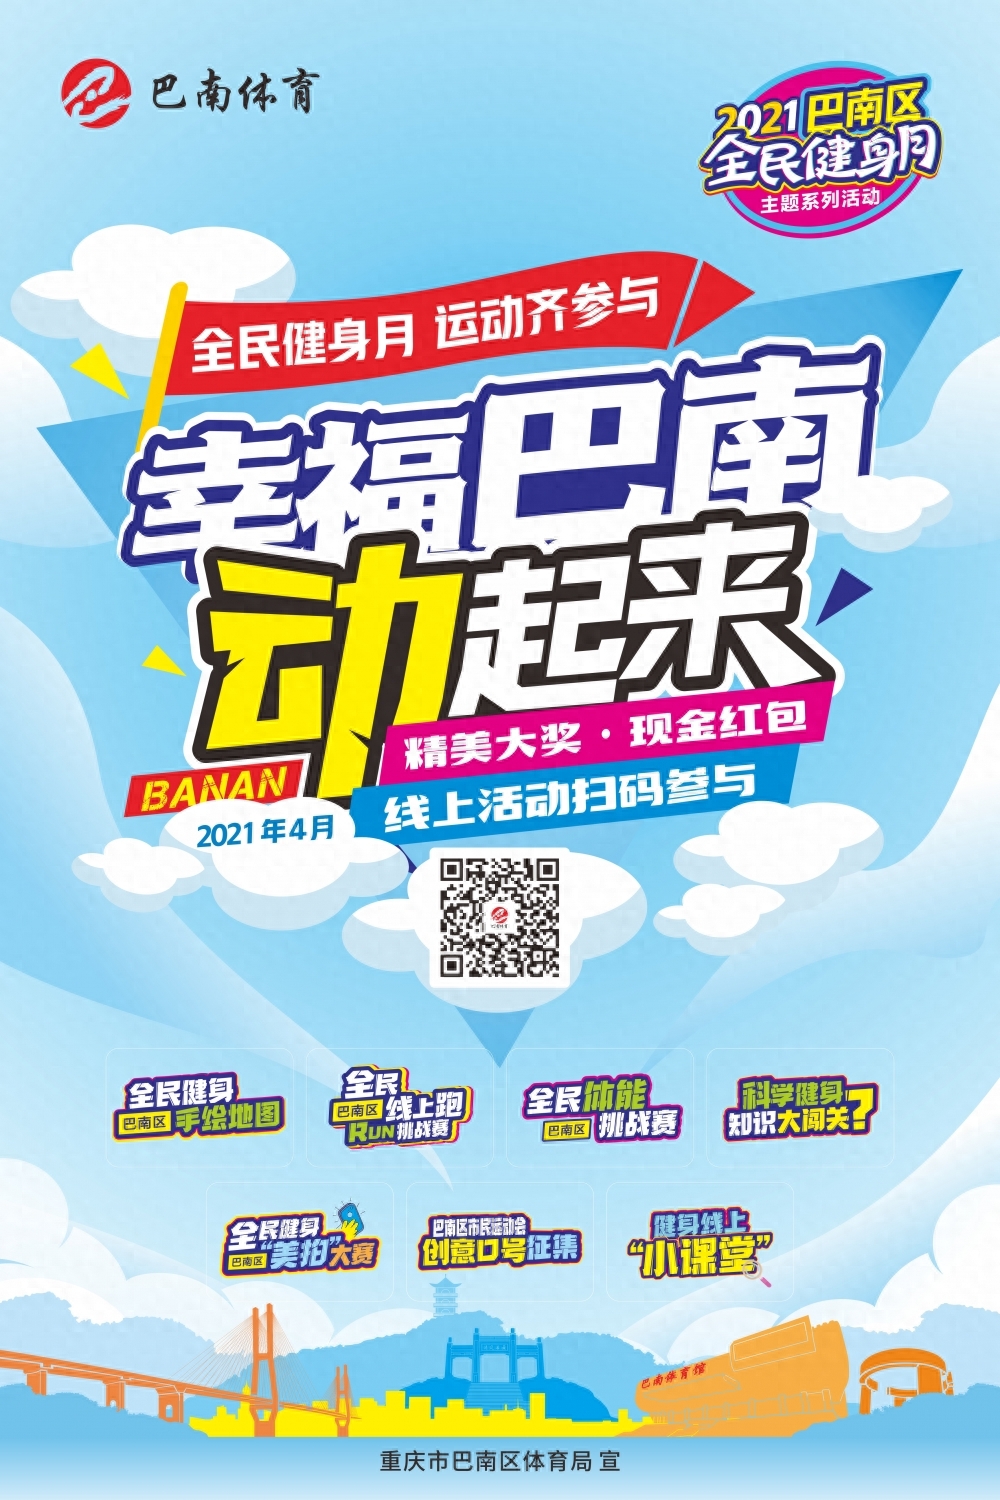 2021年4月是重庆市实施《重庆市全民健条例》的第三个“全民健身月”，巴南区4月12日开启以“全民健身齐参与，幸福巴南动起来”为主题的2021巴南区“全民健身月”系列线上活动，鼓